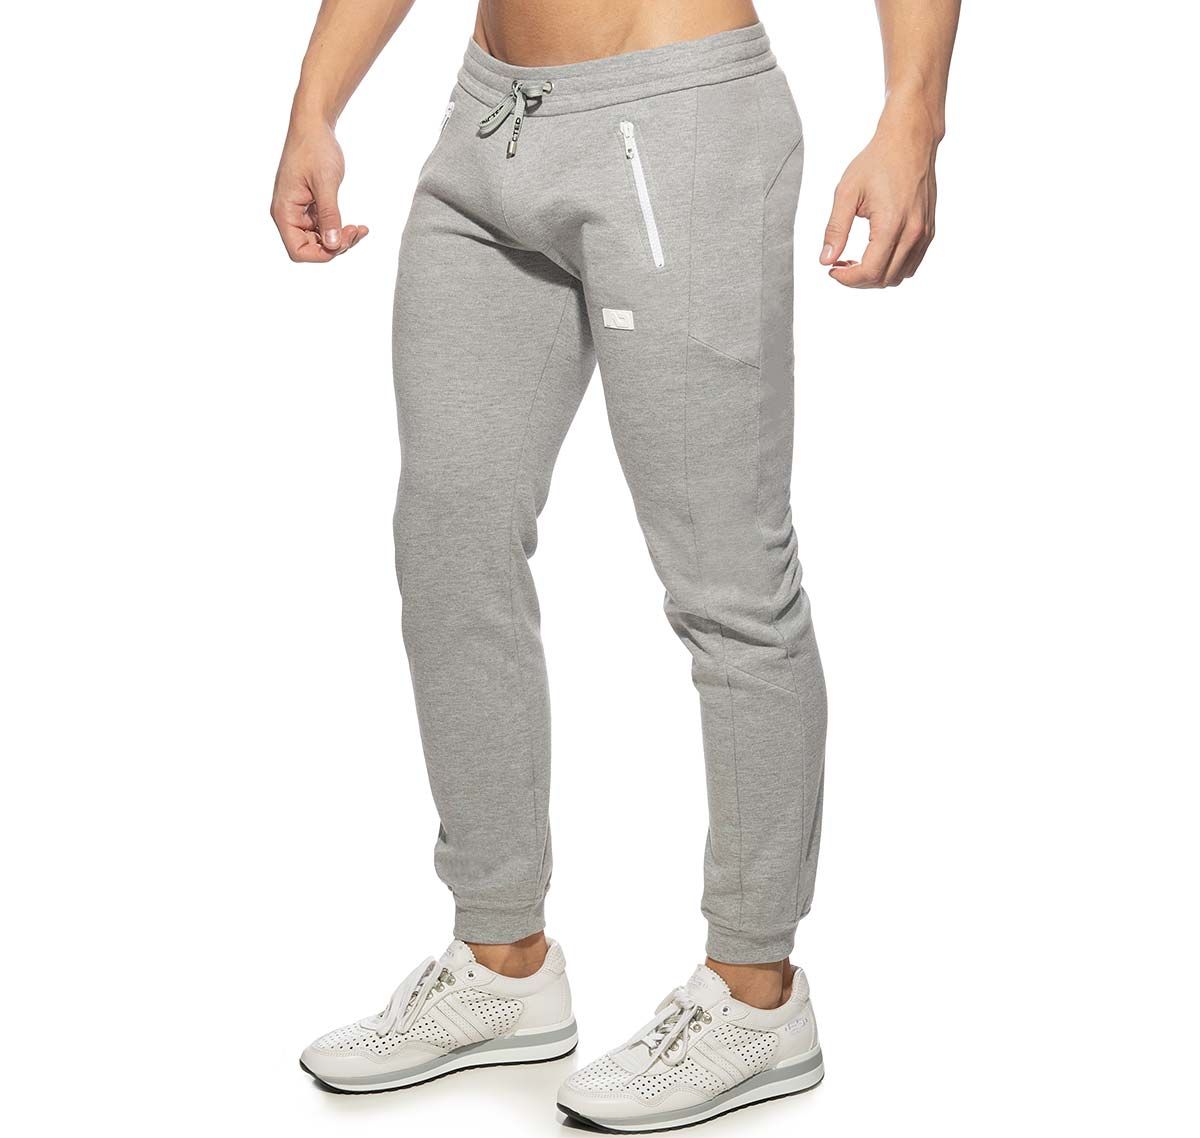 Addicted Pantalón deportivo DOUBLE ZIP JOGGING PANTS AD1012, gris